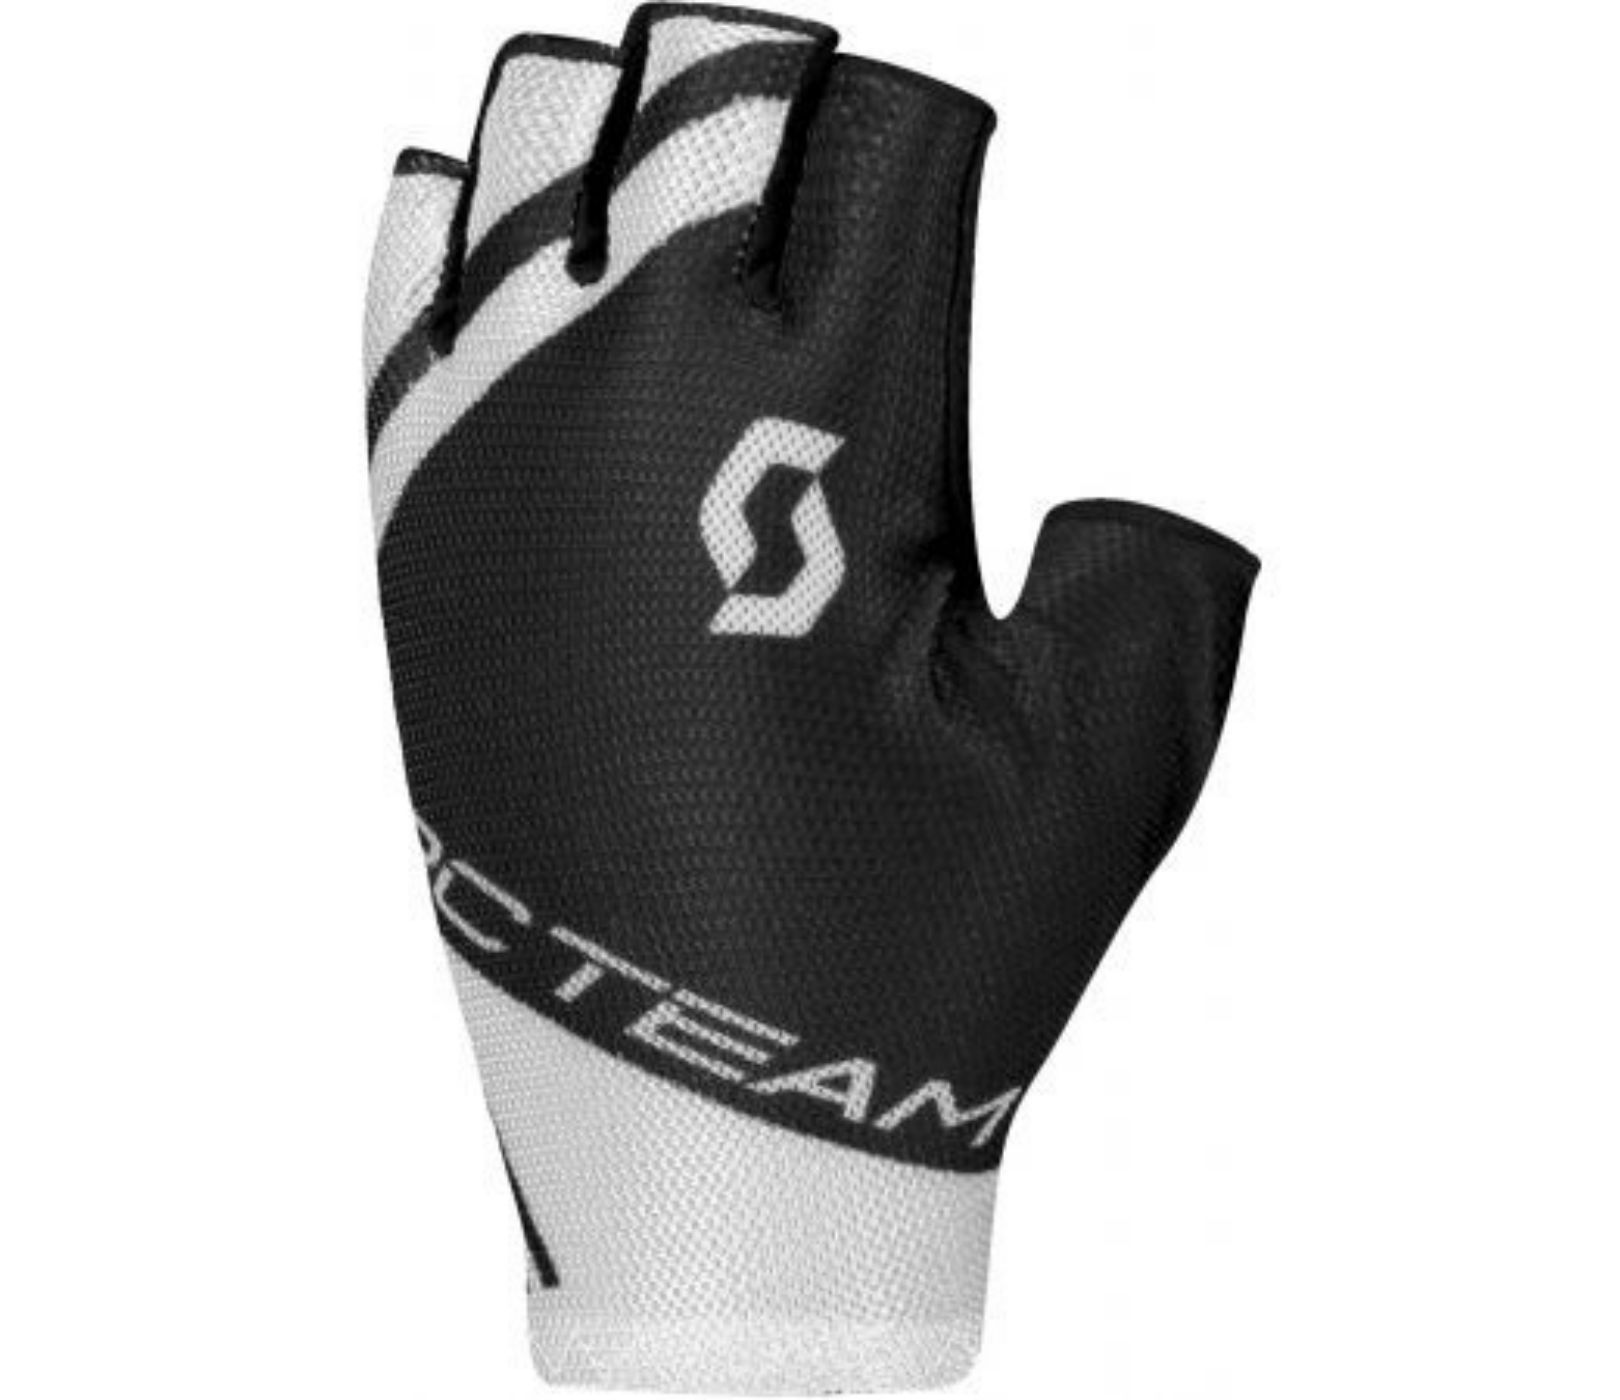 Scott RC Team Short Finger Glove - Black/White 